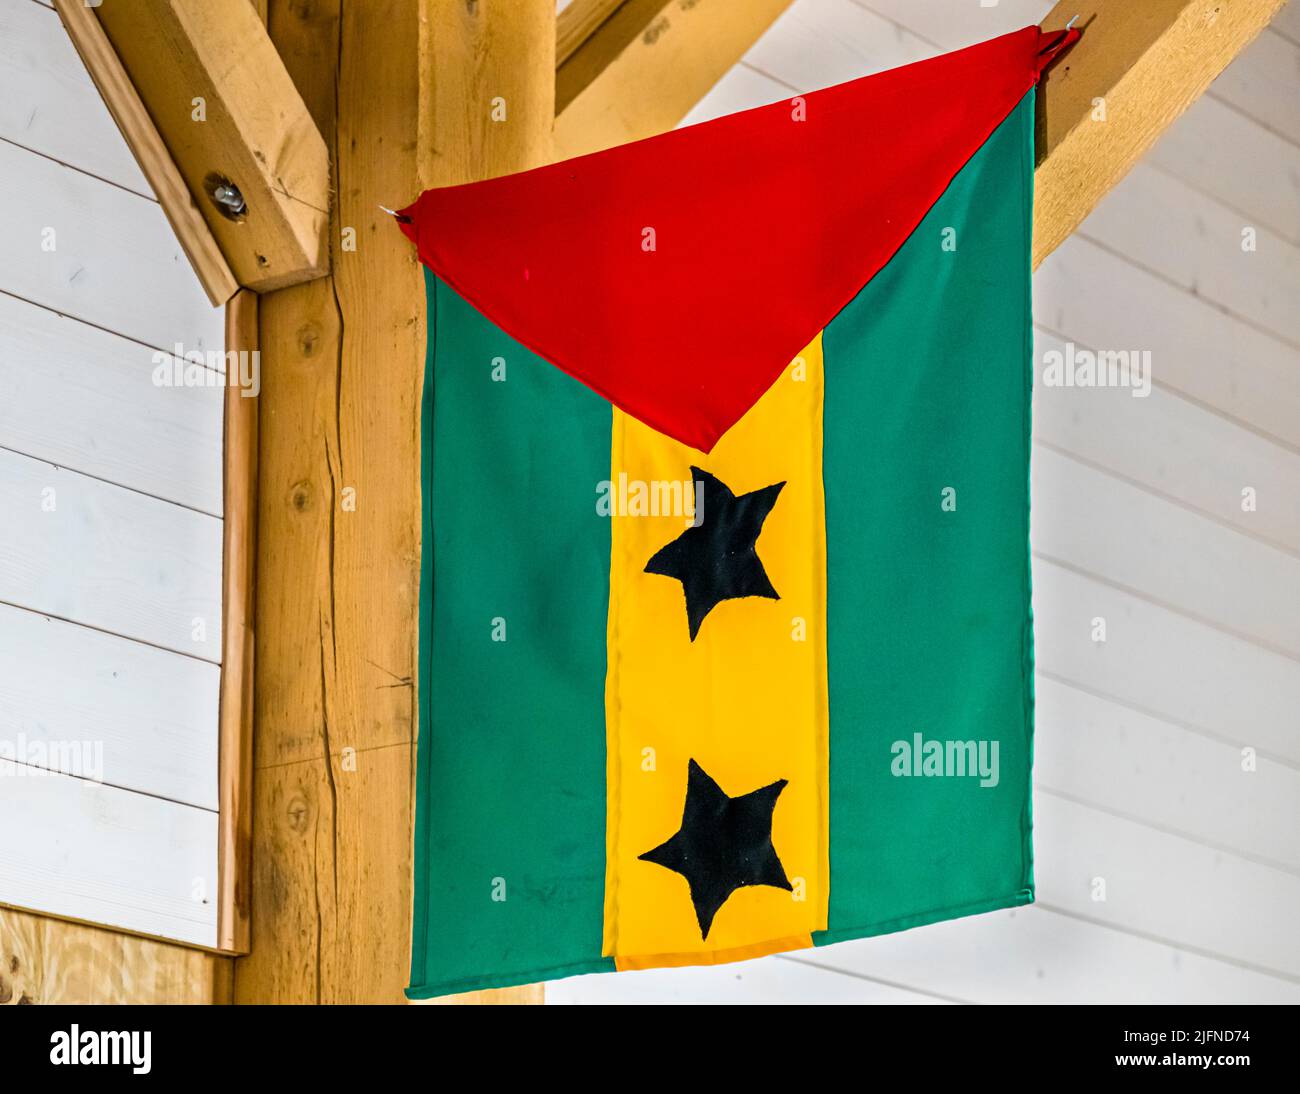 Die Flagge von São Tomé hängt in der Schokoladenfabrik Frigoulette in Beaufort-sur-Gervanne (die, Frankreich). São Tomé und Príncipe sind nach den Seychellen der zweitkleinste Staat Afrikas. Der Inselstaat im Golf von Guinea liegt etwa 200 km vor der Küste Afrikas westlich von Äquatorialguinea und Gabun Stockfoto